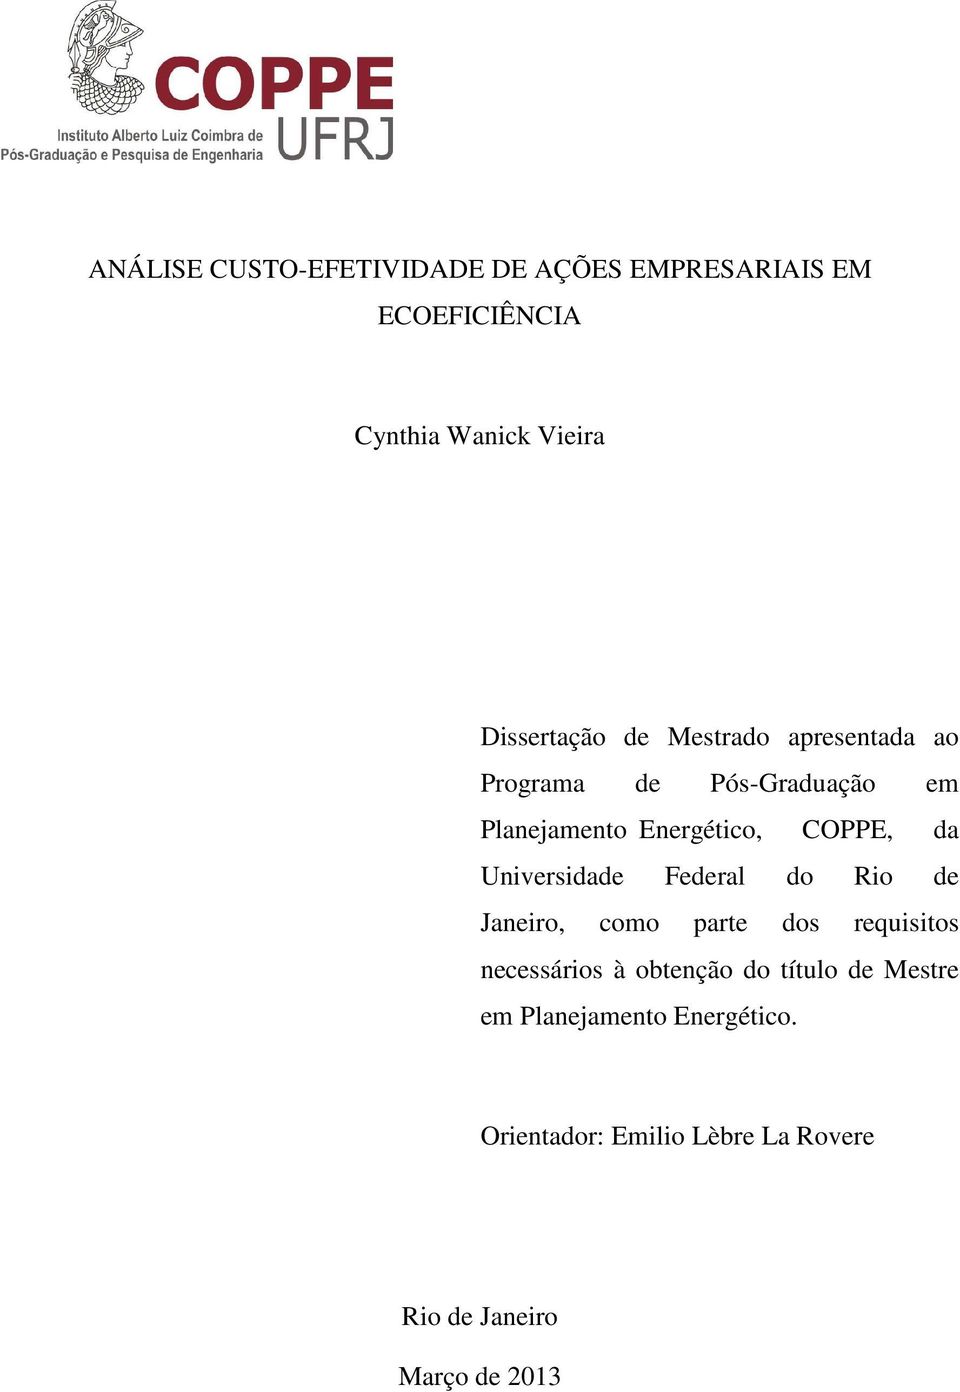 COPPE, da Universidade Federal do Rio de Janeiro, como parte dos requisitos necessários à